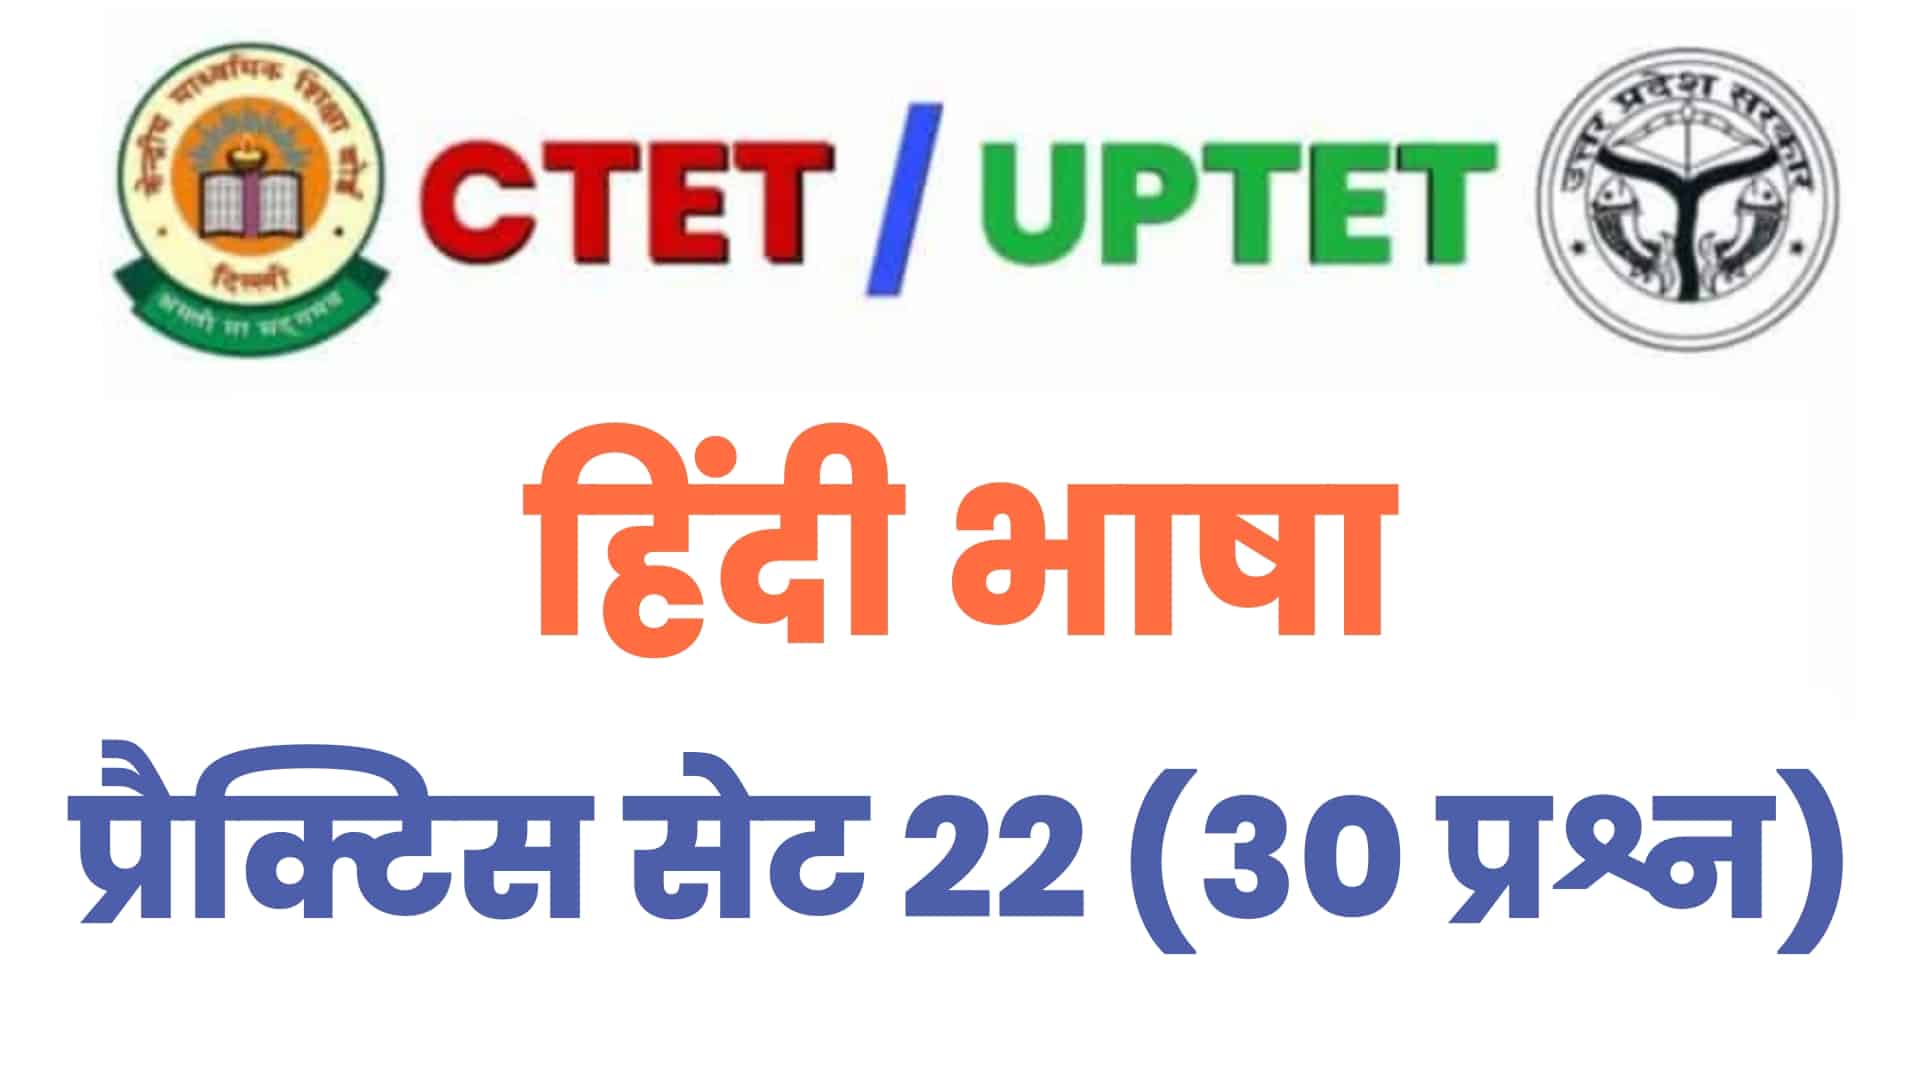 UPTET / CTET हिंदी भाषा प्रैक्टिस सेट 22 : परीक्षा में जाने से पहले इन 30 प्रश्नों का कर लें अध्ययन